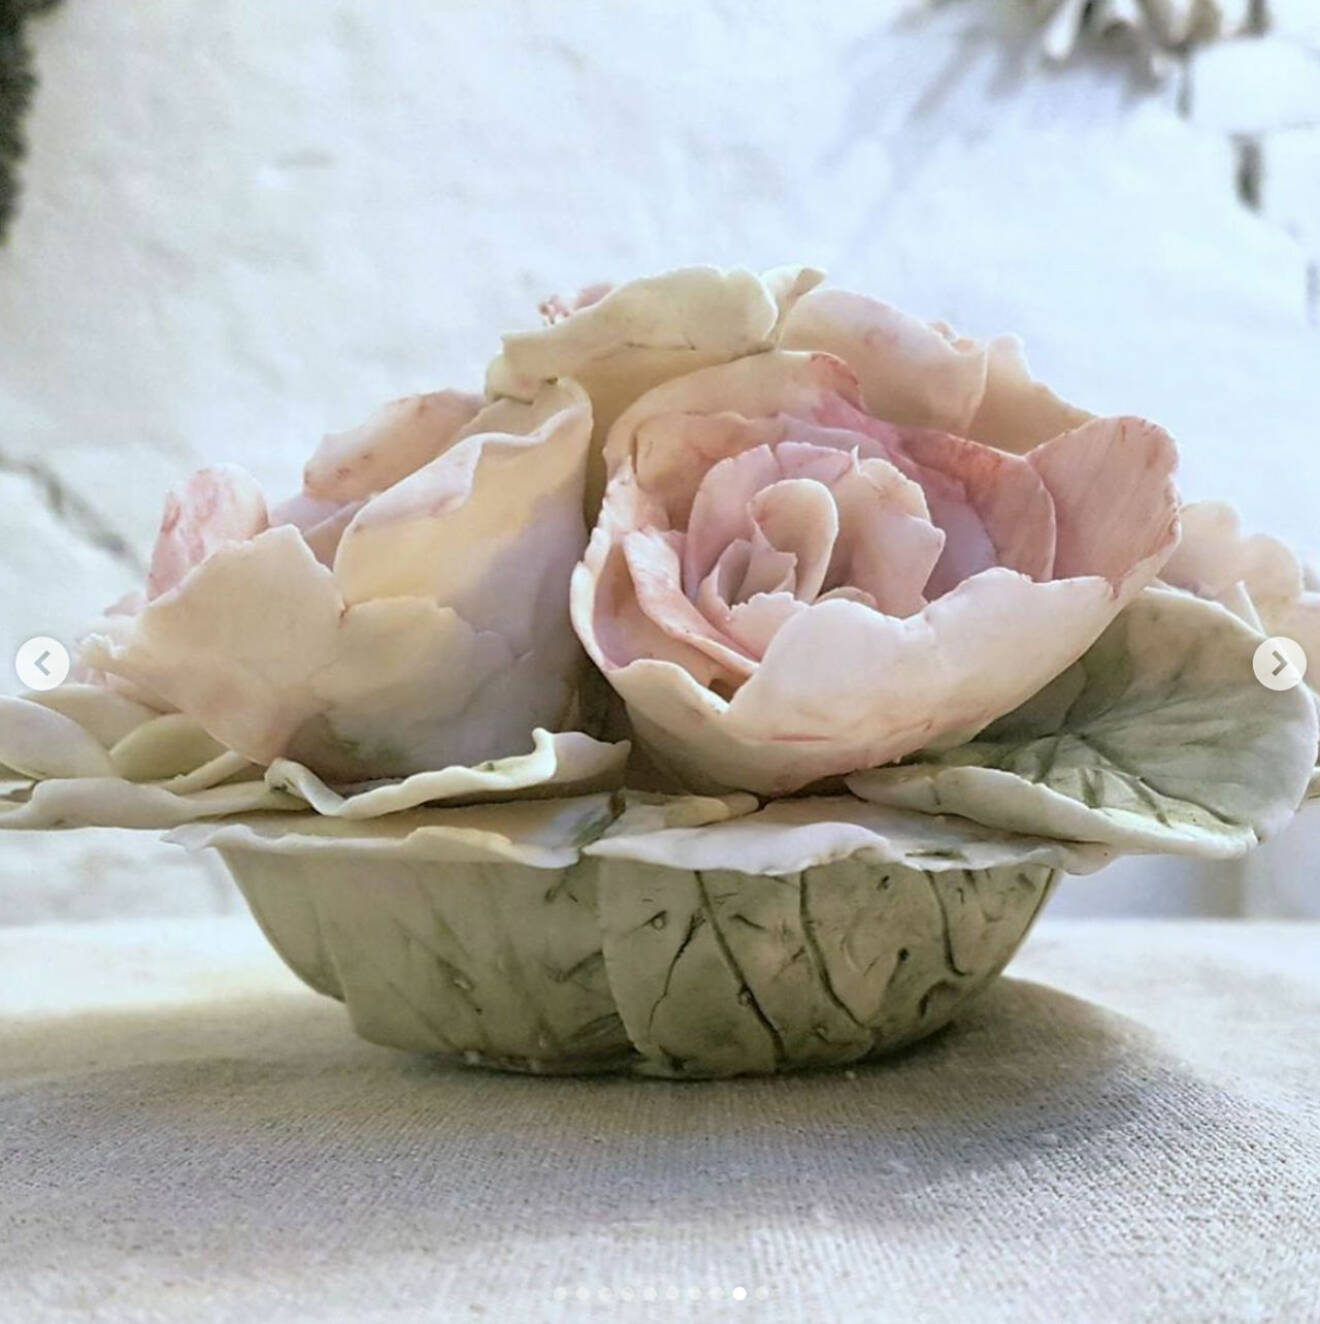 kronprinsessan Mette-Marit skapar keramik, bild från hennes Instagram